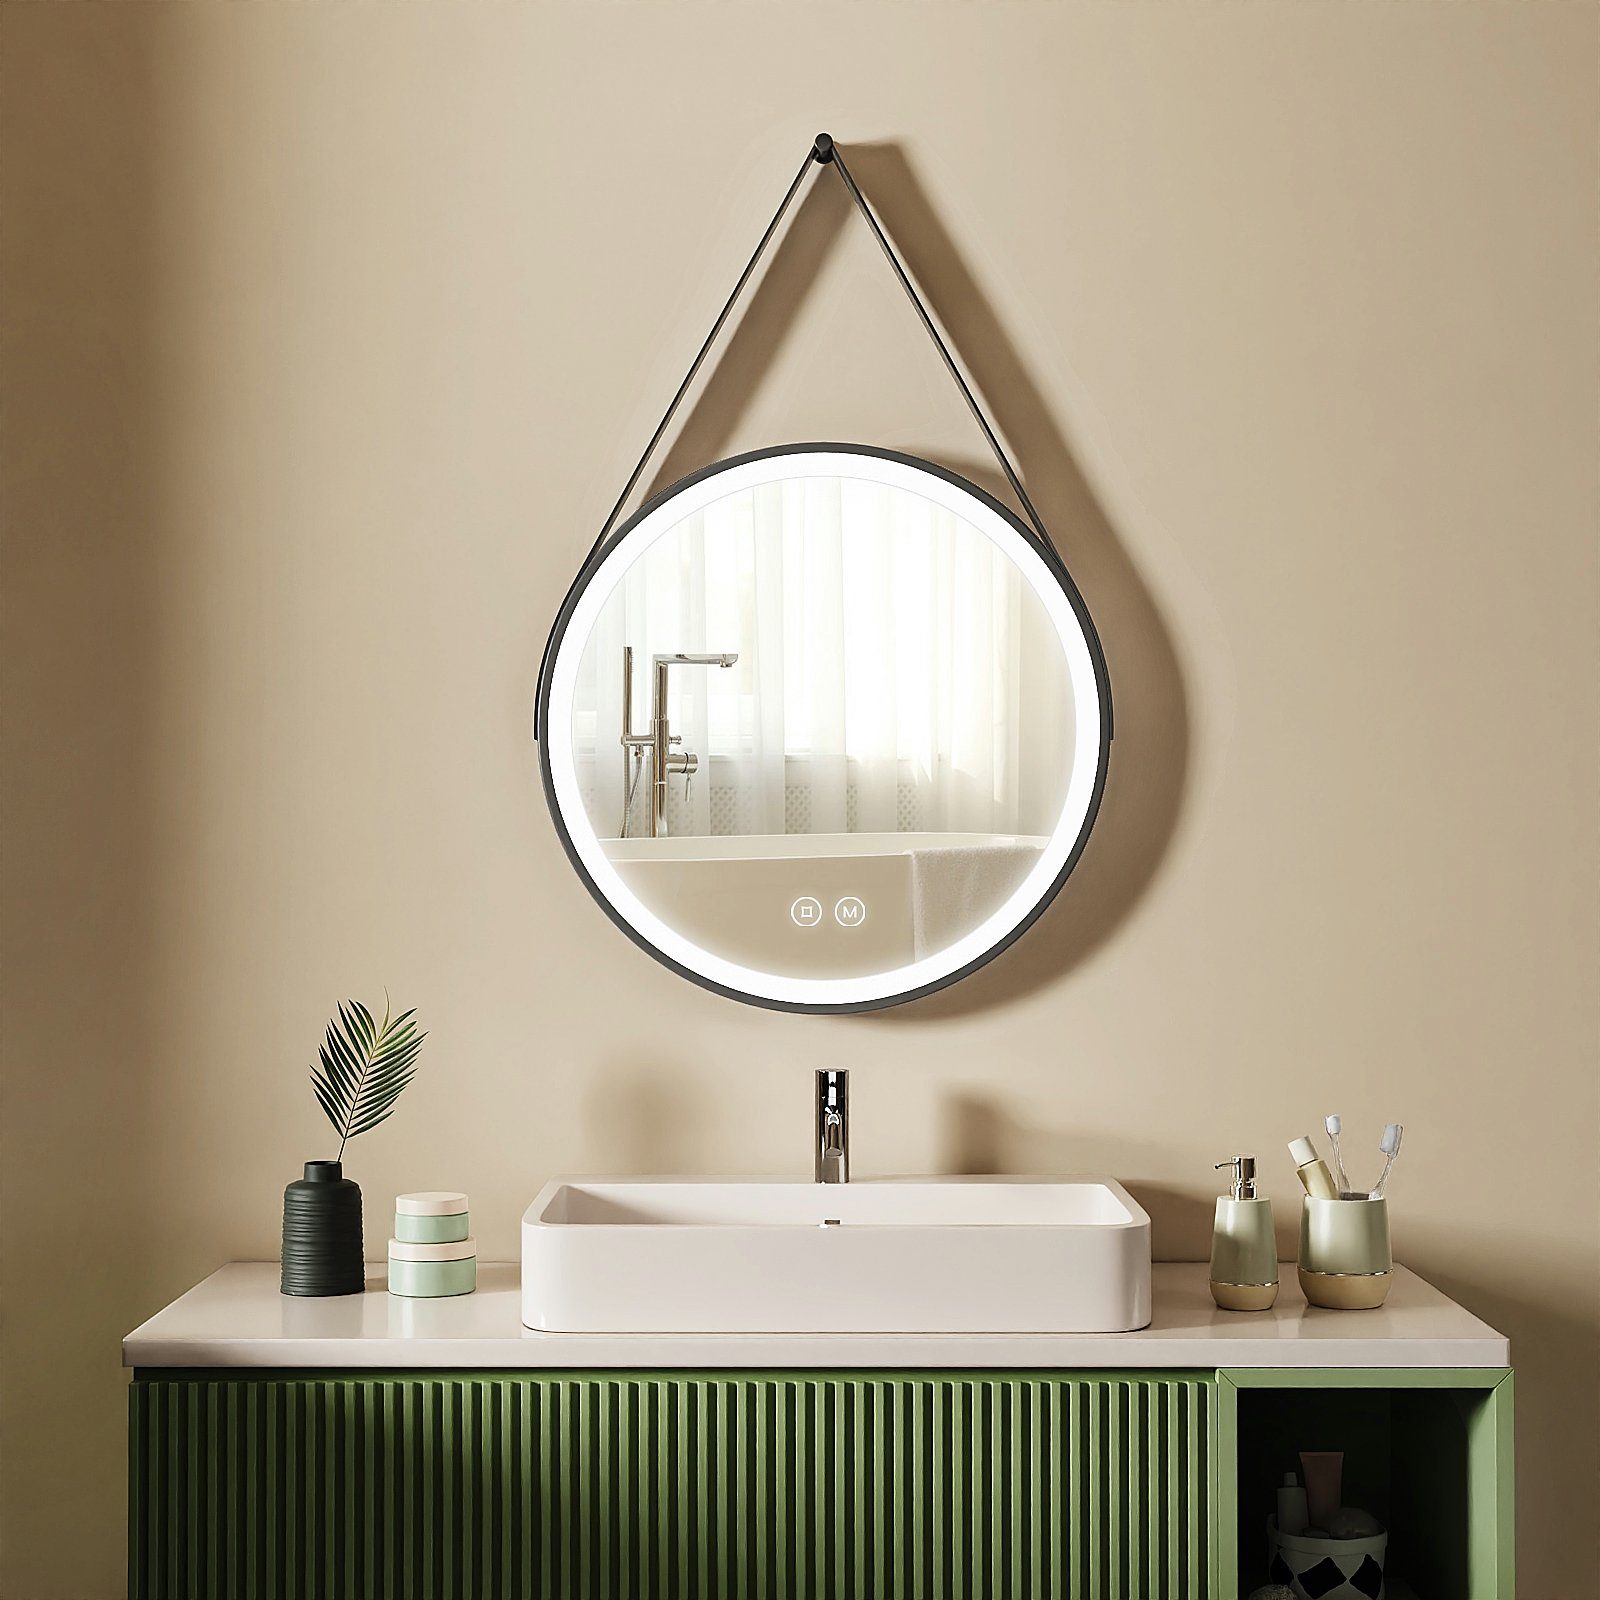 S'AFIELINA Badspiegel Runder Badspiegel mit Beleuchtung LED Badspiegel Wandspiegel, Touch-Schalter,3000/4000/6500K Lichtfarbe,Energiesparend,IP44